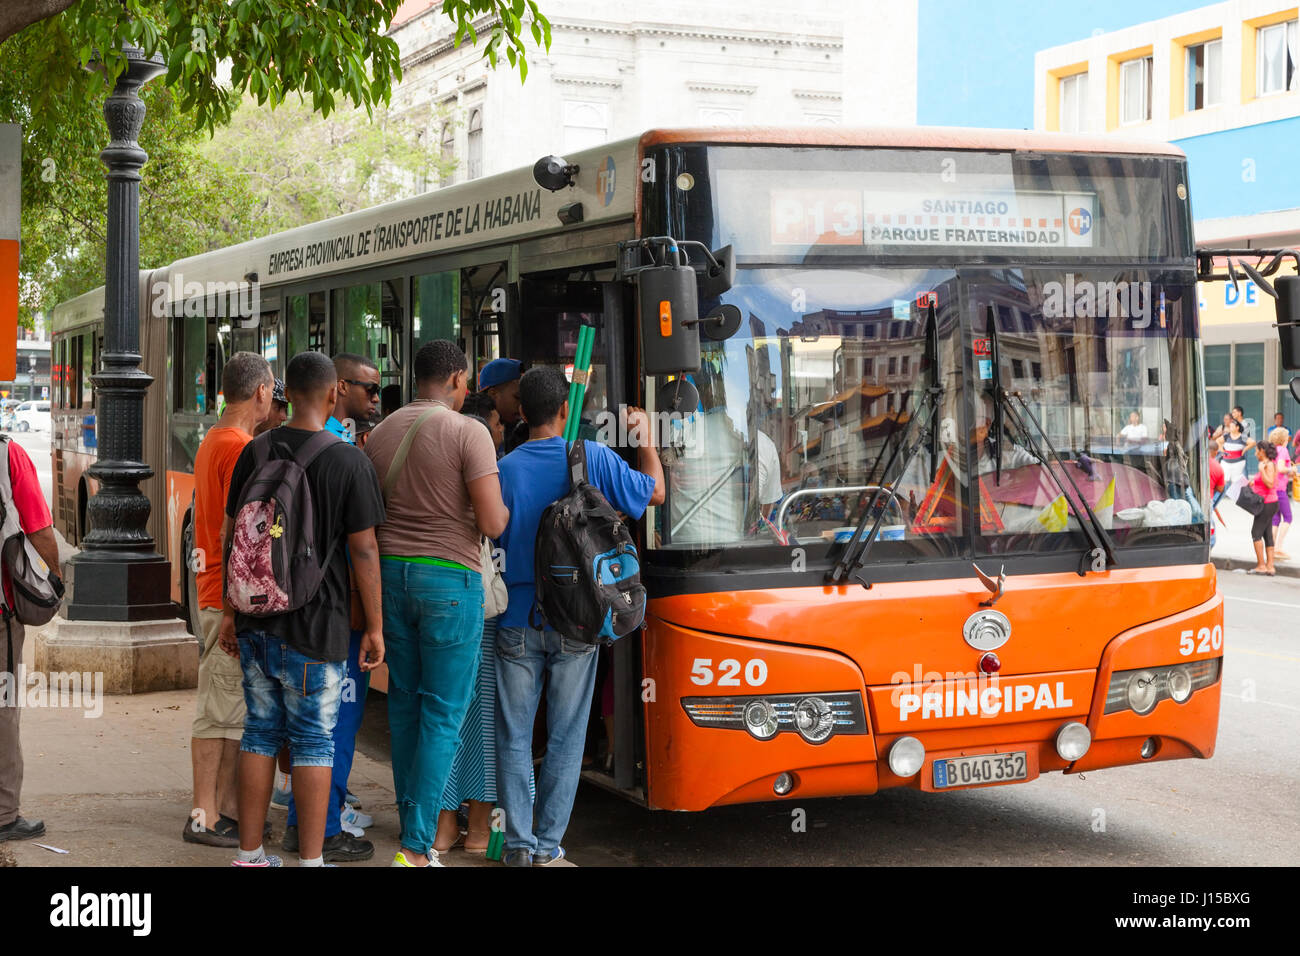 passengers boarding public bus in Havana, Cuba. Stock Photo